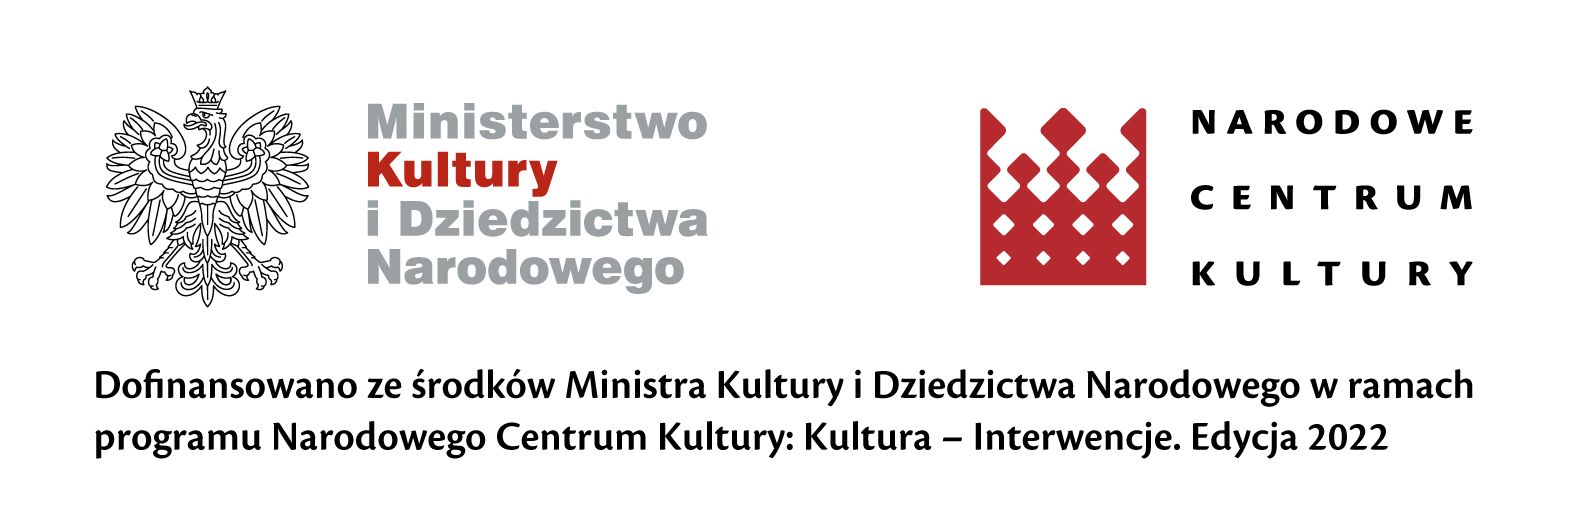 Logotypy NCK i Ministra Kultury na białym tle.